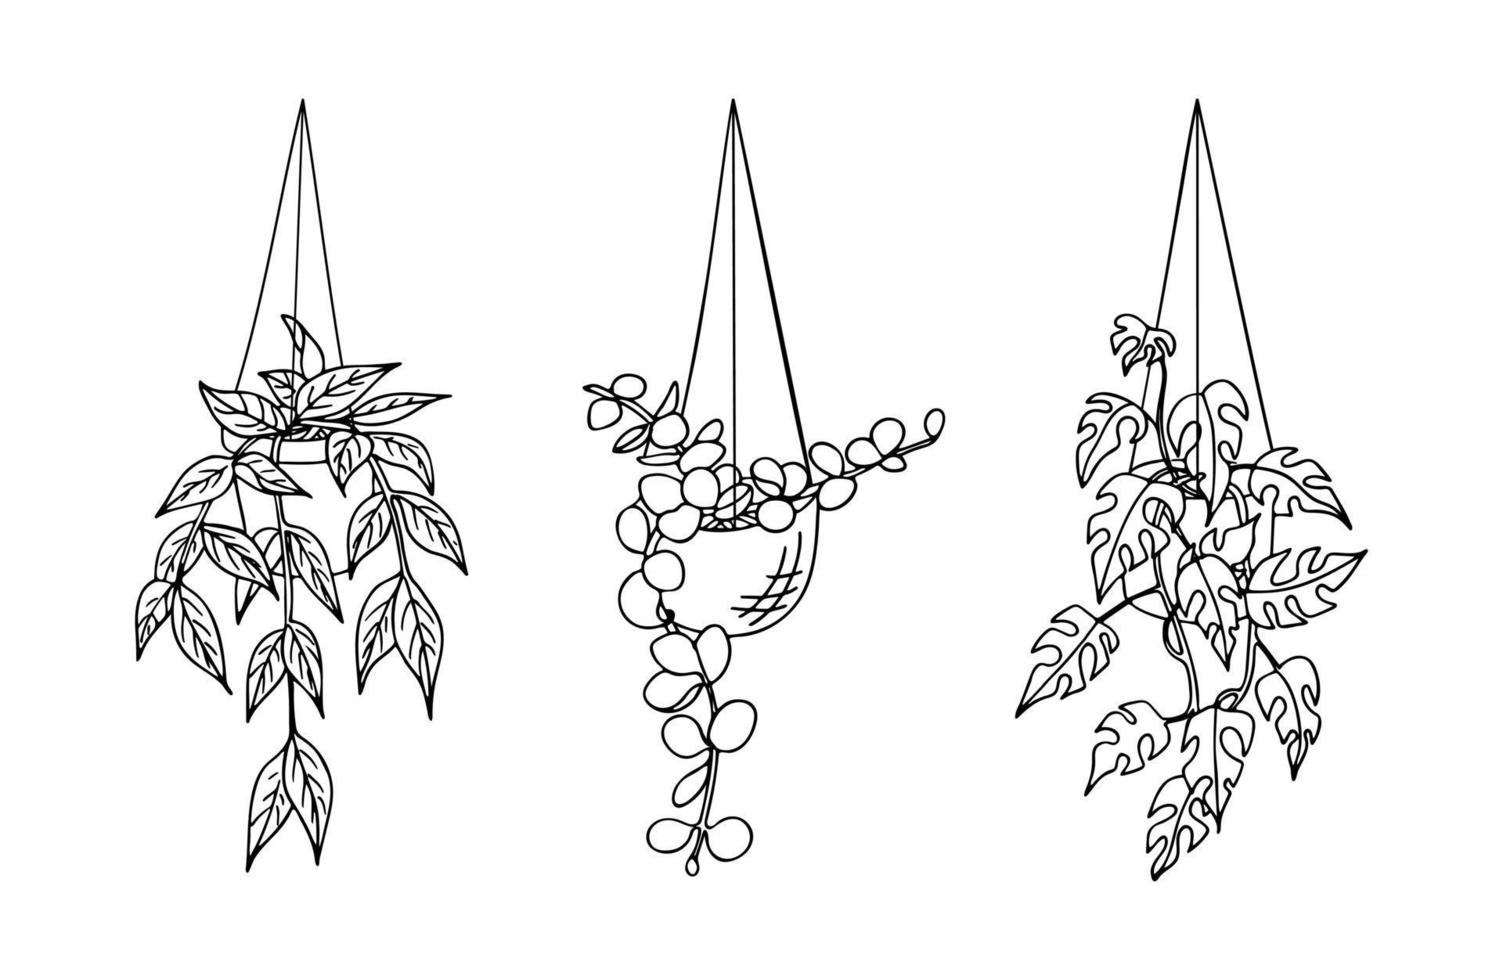 uppsättning av klotter hängande hus växter i kastruller isolerat på vit bakgrund. ritad för hand vektor illustration av inomhus- växter för märka, omslag och Övrig botanisk design.